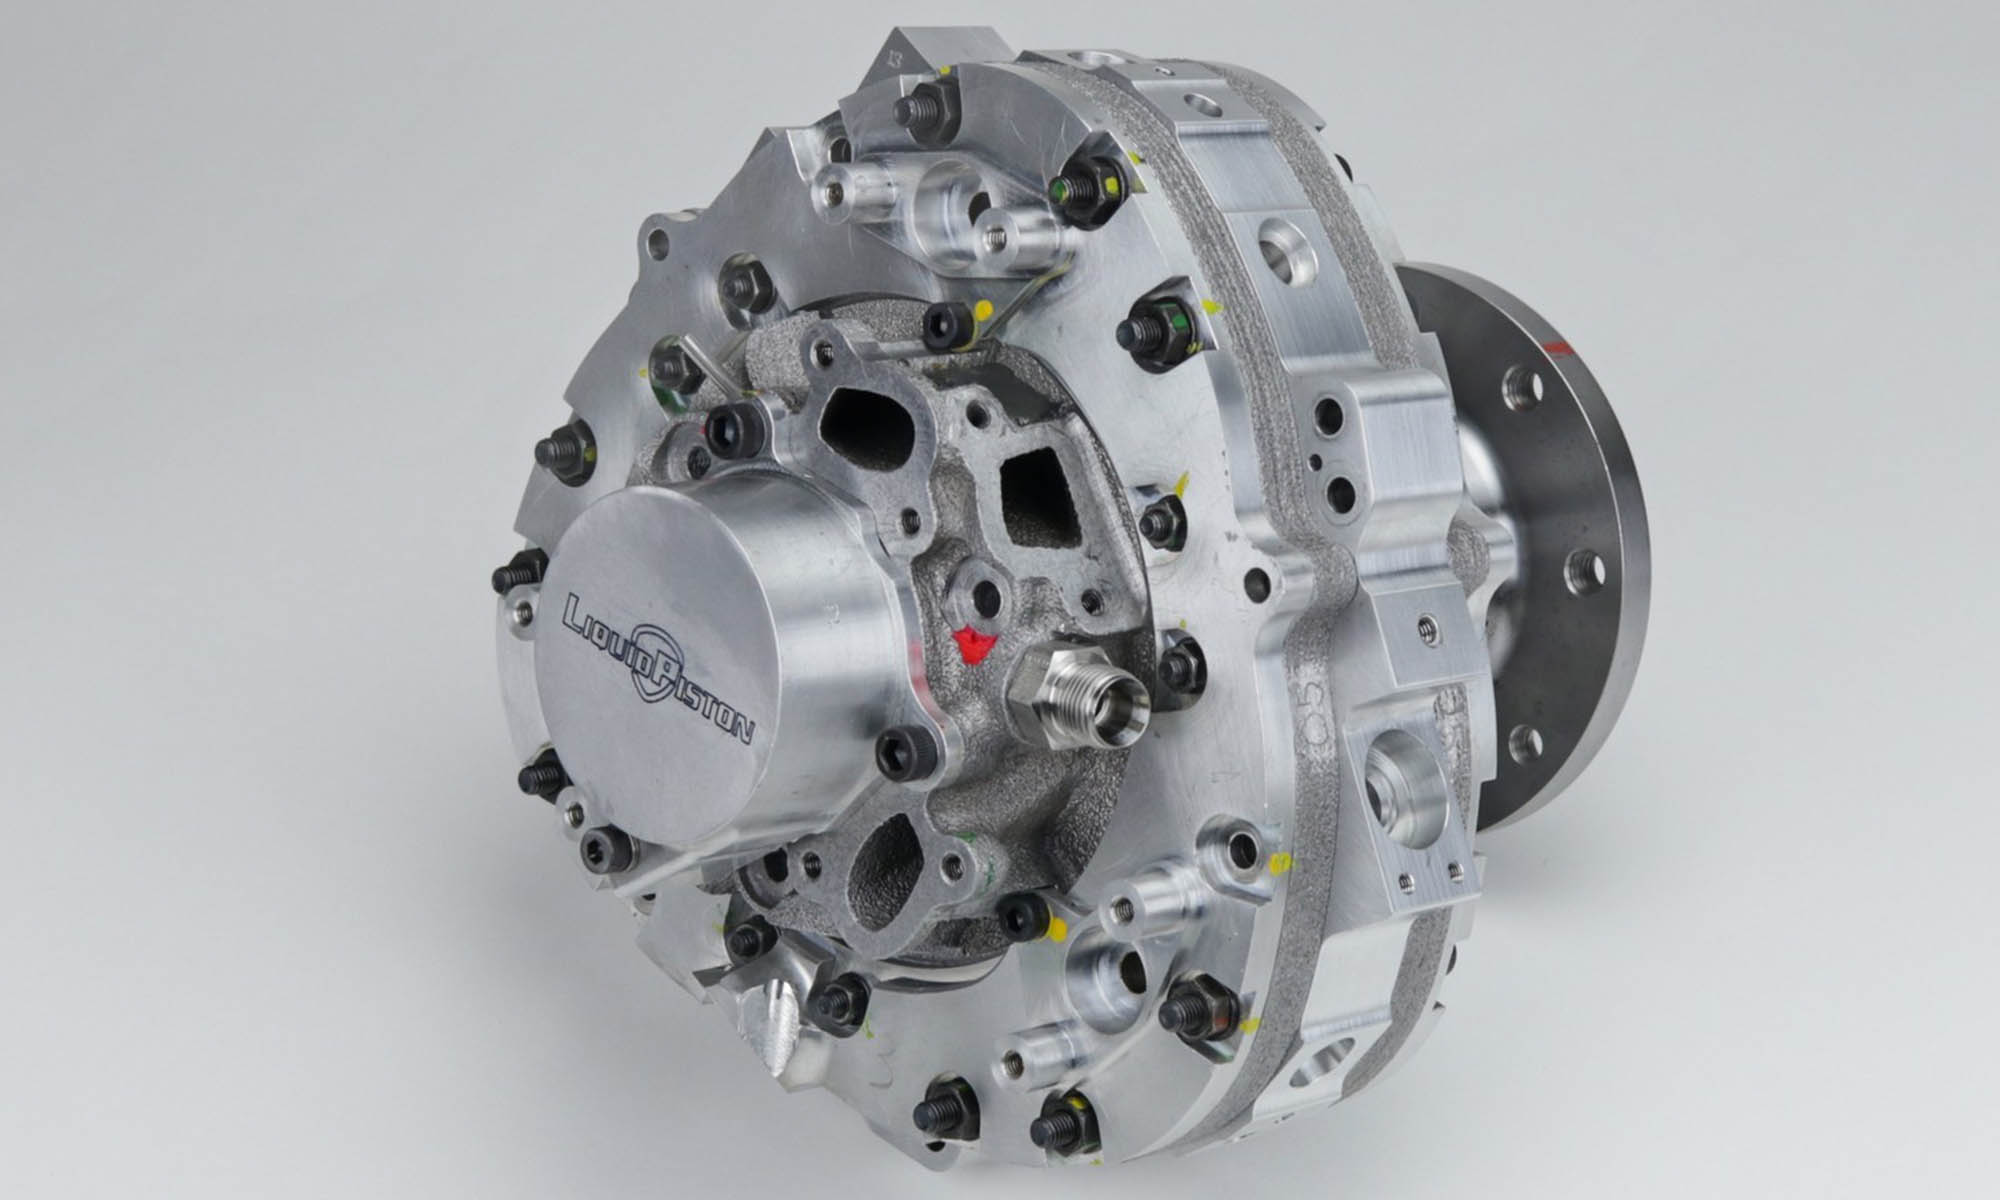 El motor desarrollado por LiquidPiston es más duradero y eficiente que un motor rotativo como el de Mazda.